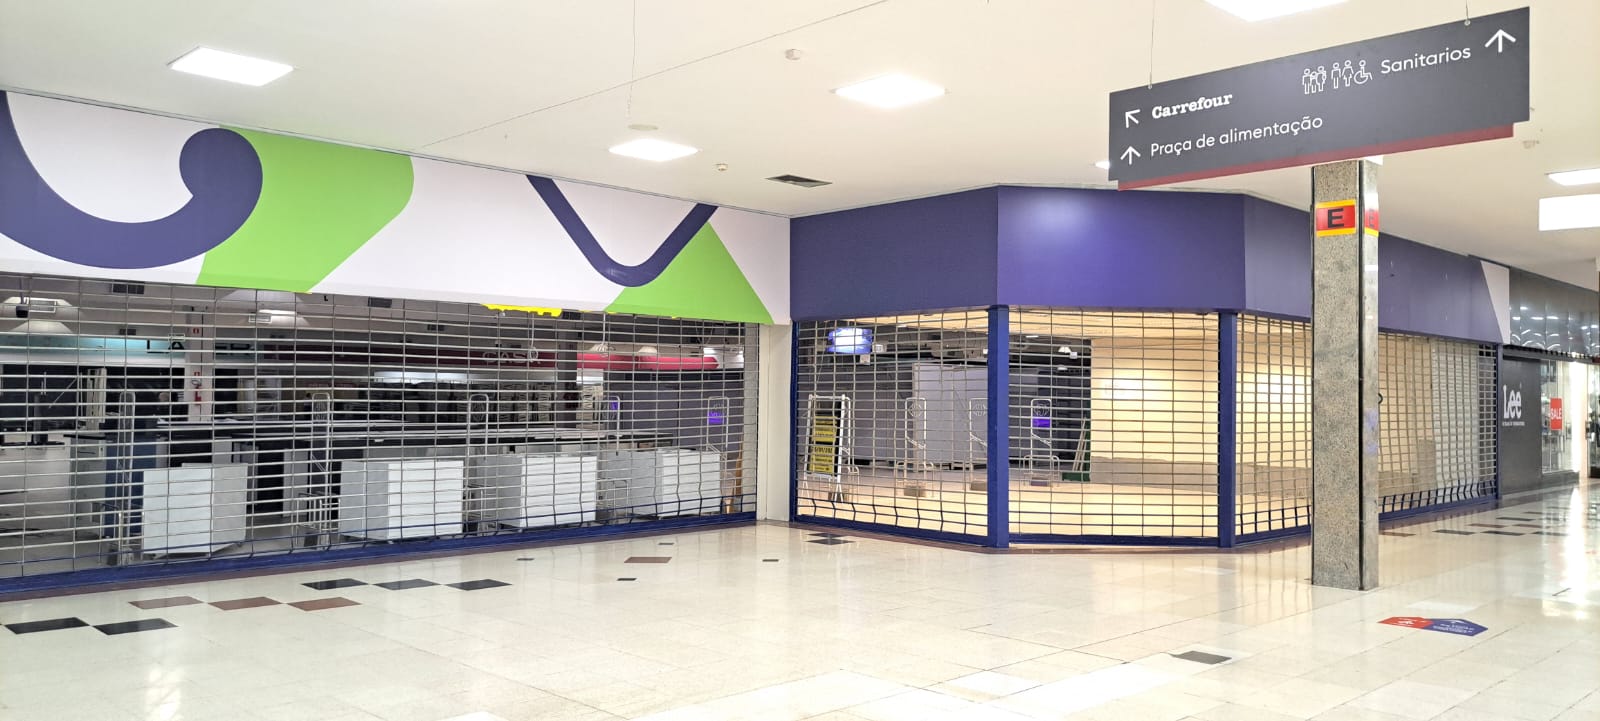 Carrefour Joinville encerra as atividades definitivamente